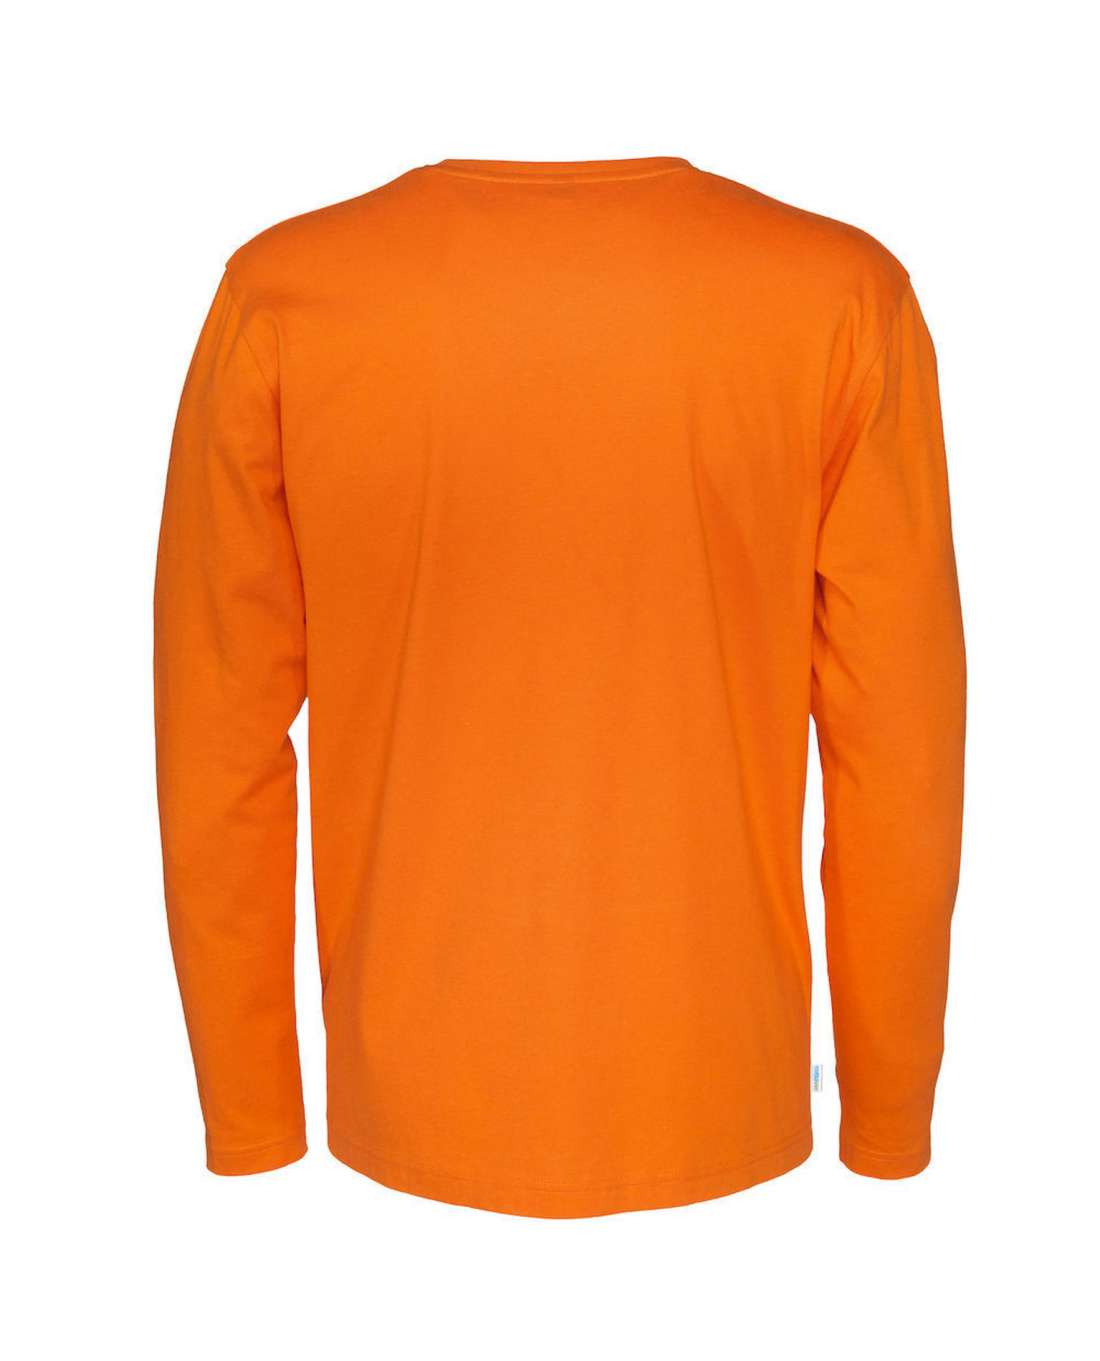 Cottover Miesten pitkähihainen T-paita, Oranssi